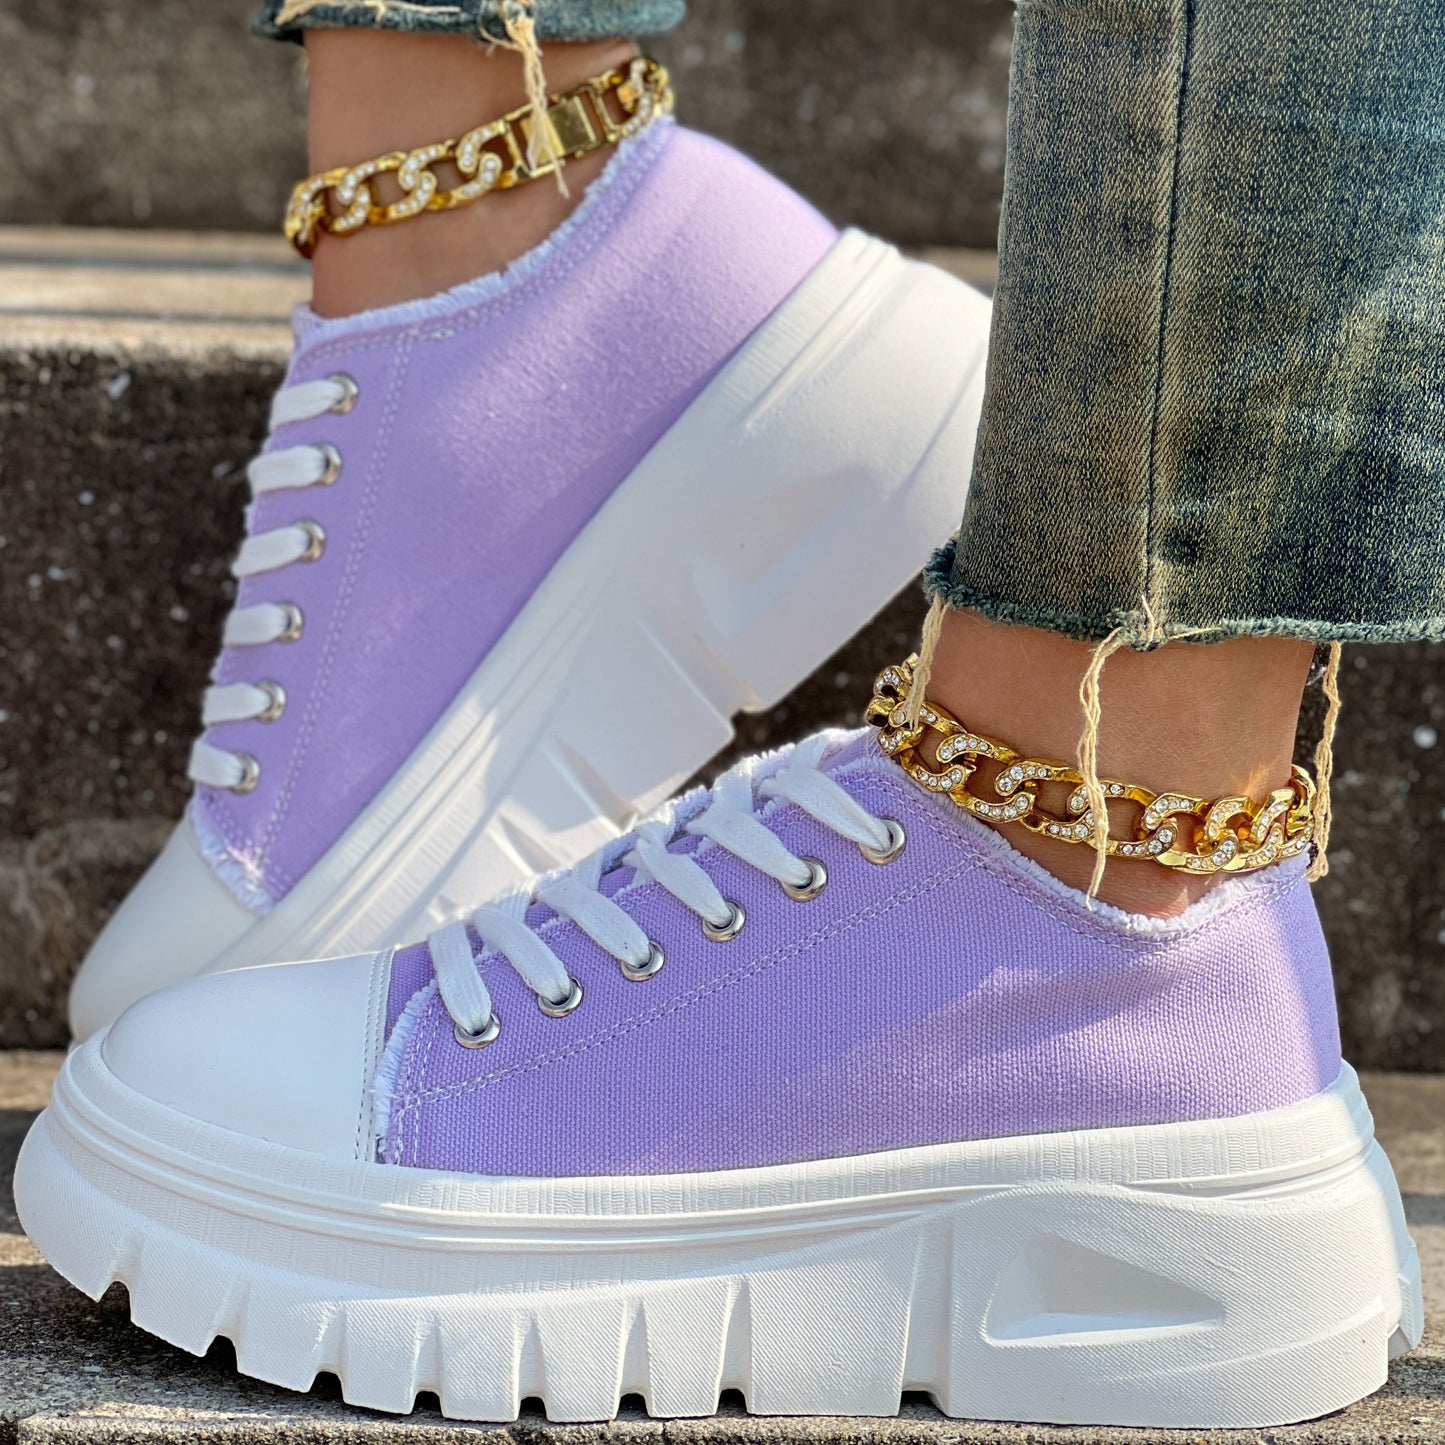 Women's Solid Color Casual Shoes, Lace Up Platform Soft Sole Shoes, Low-top Canvas Walking Shoes